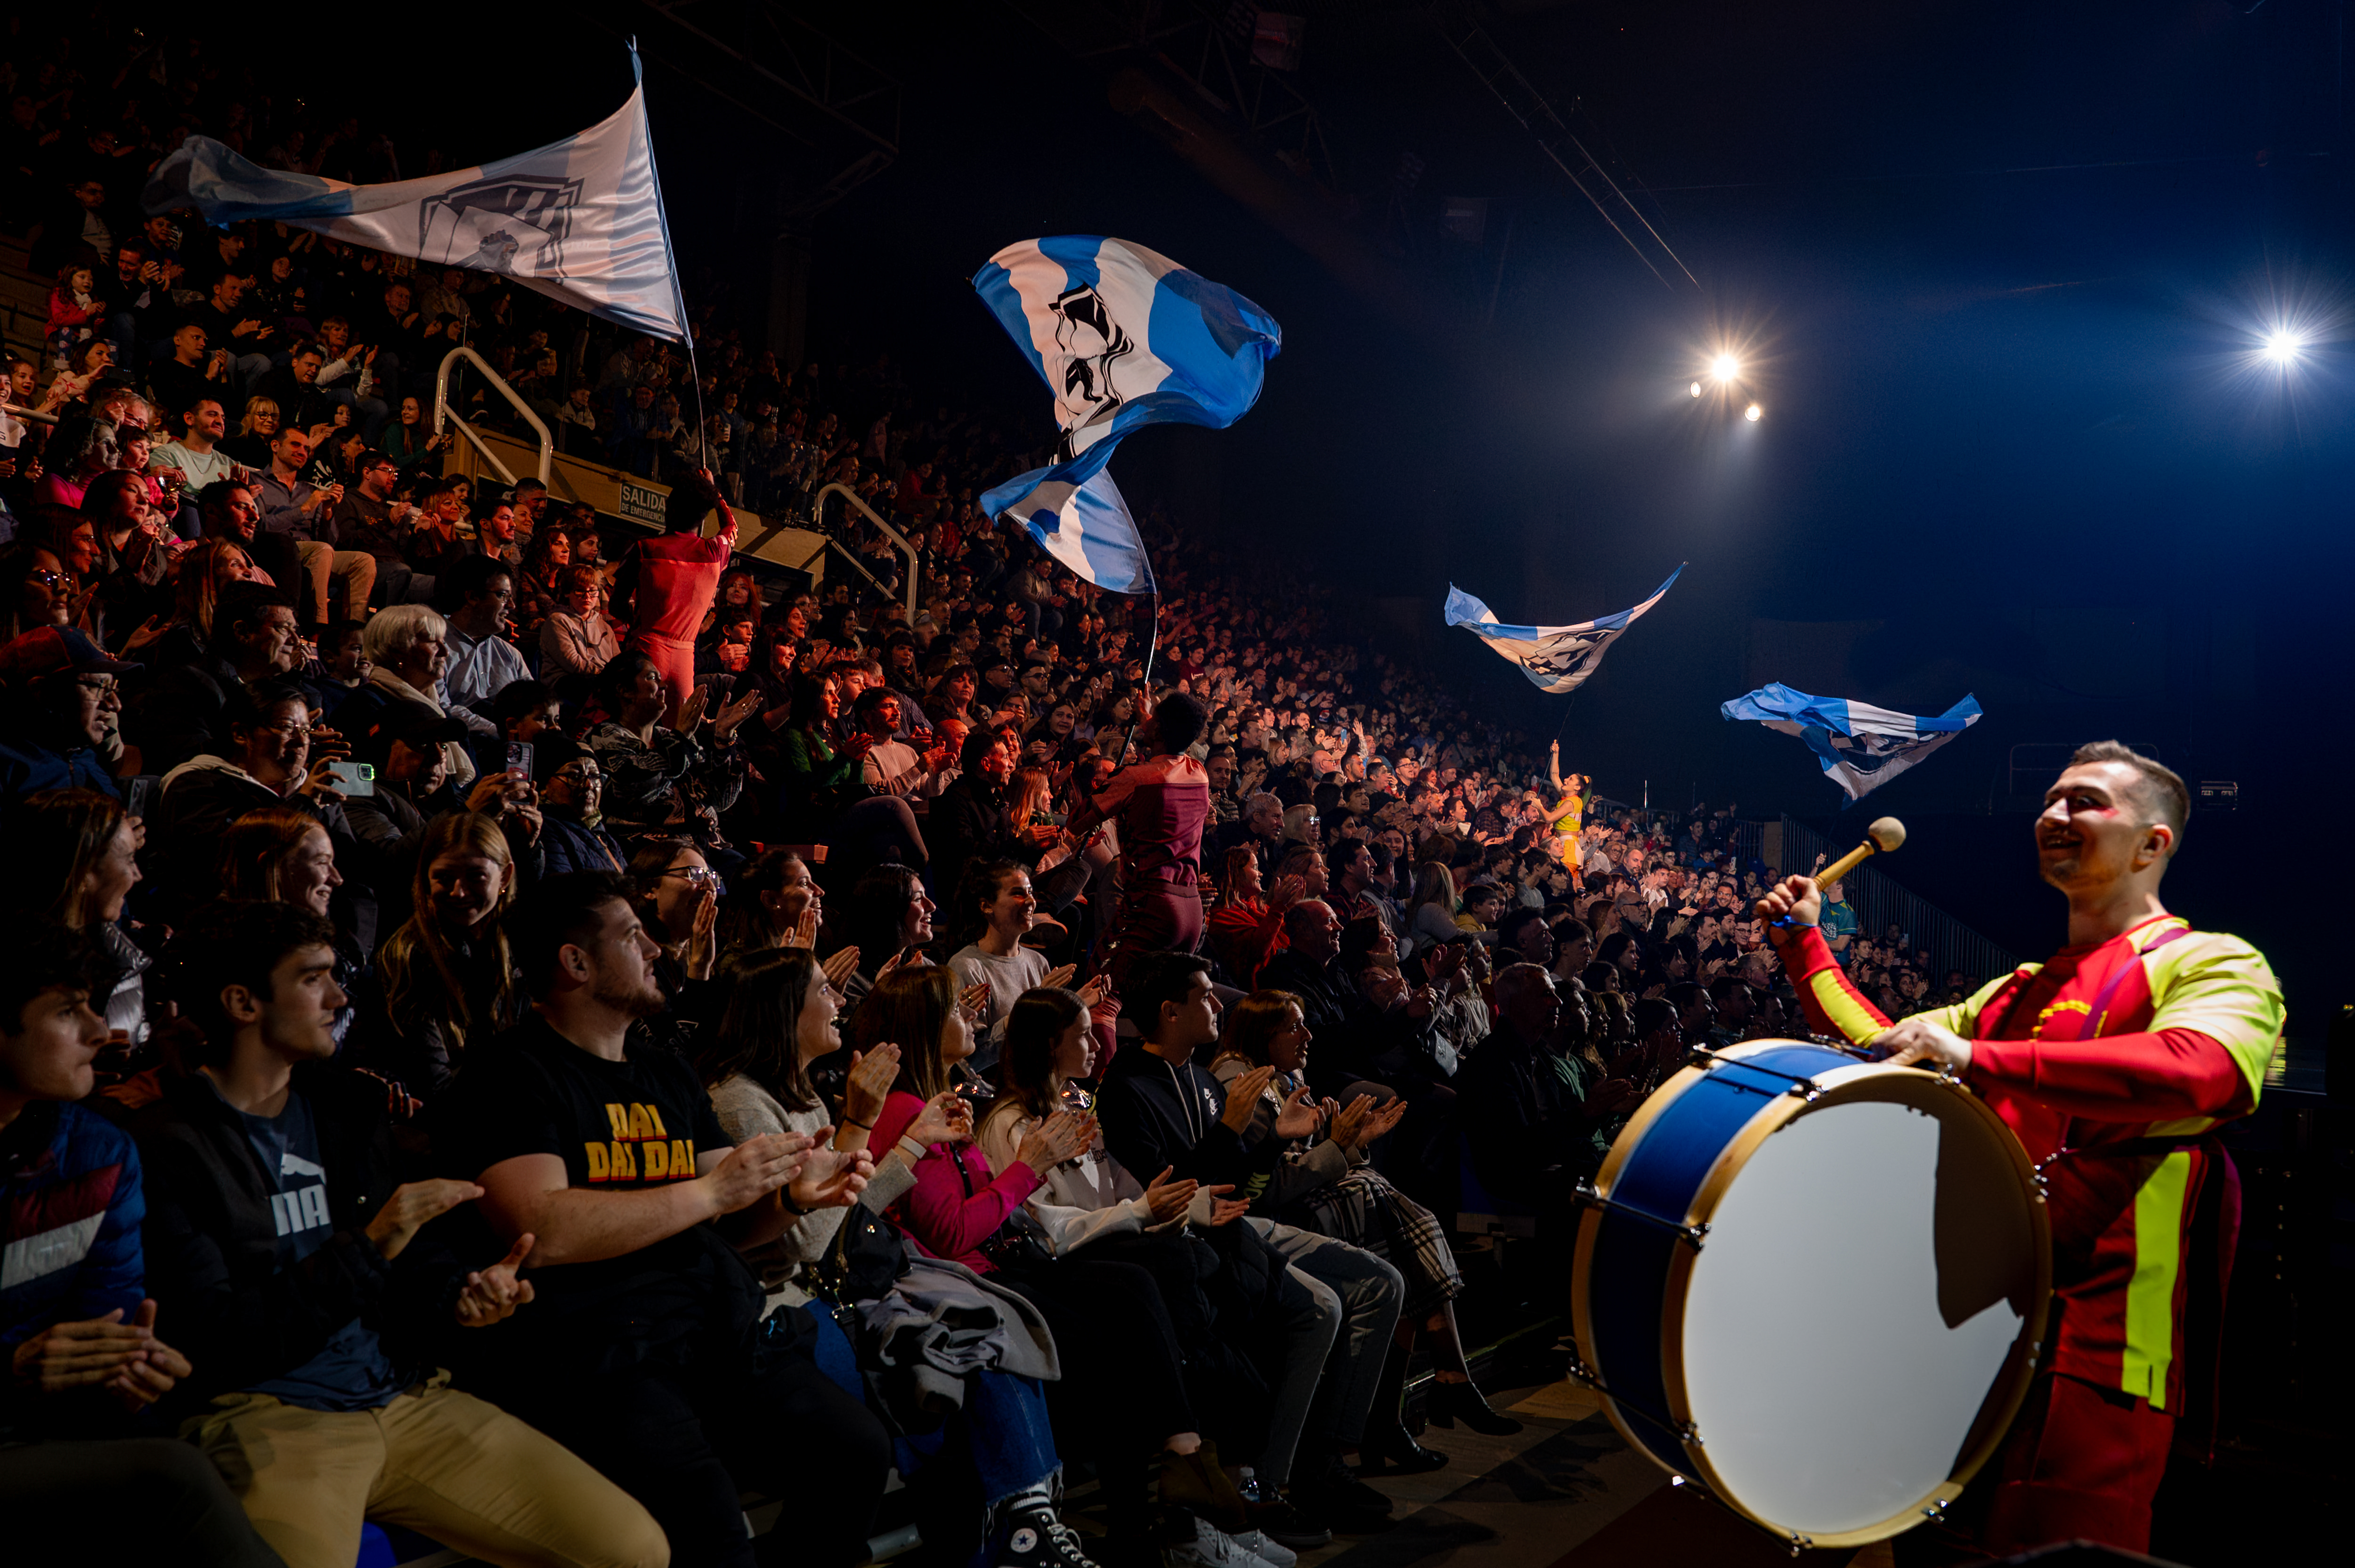 ltima funcin de Messi10 by Cirque du Soleil en Rosario